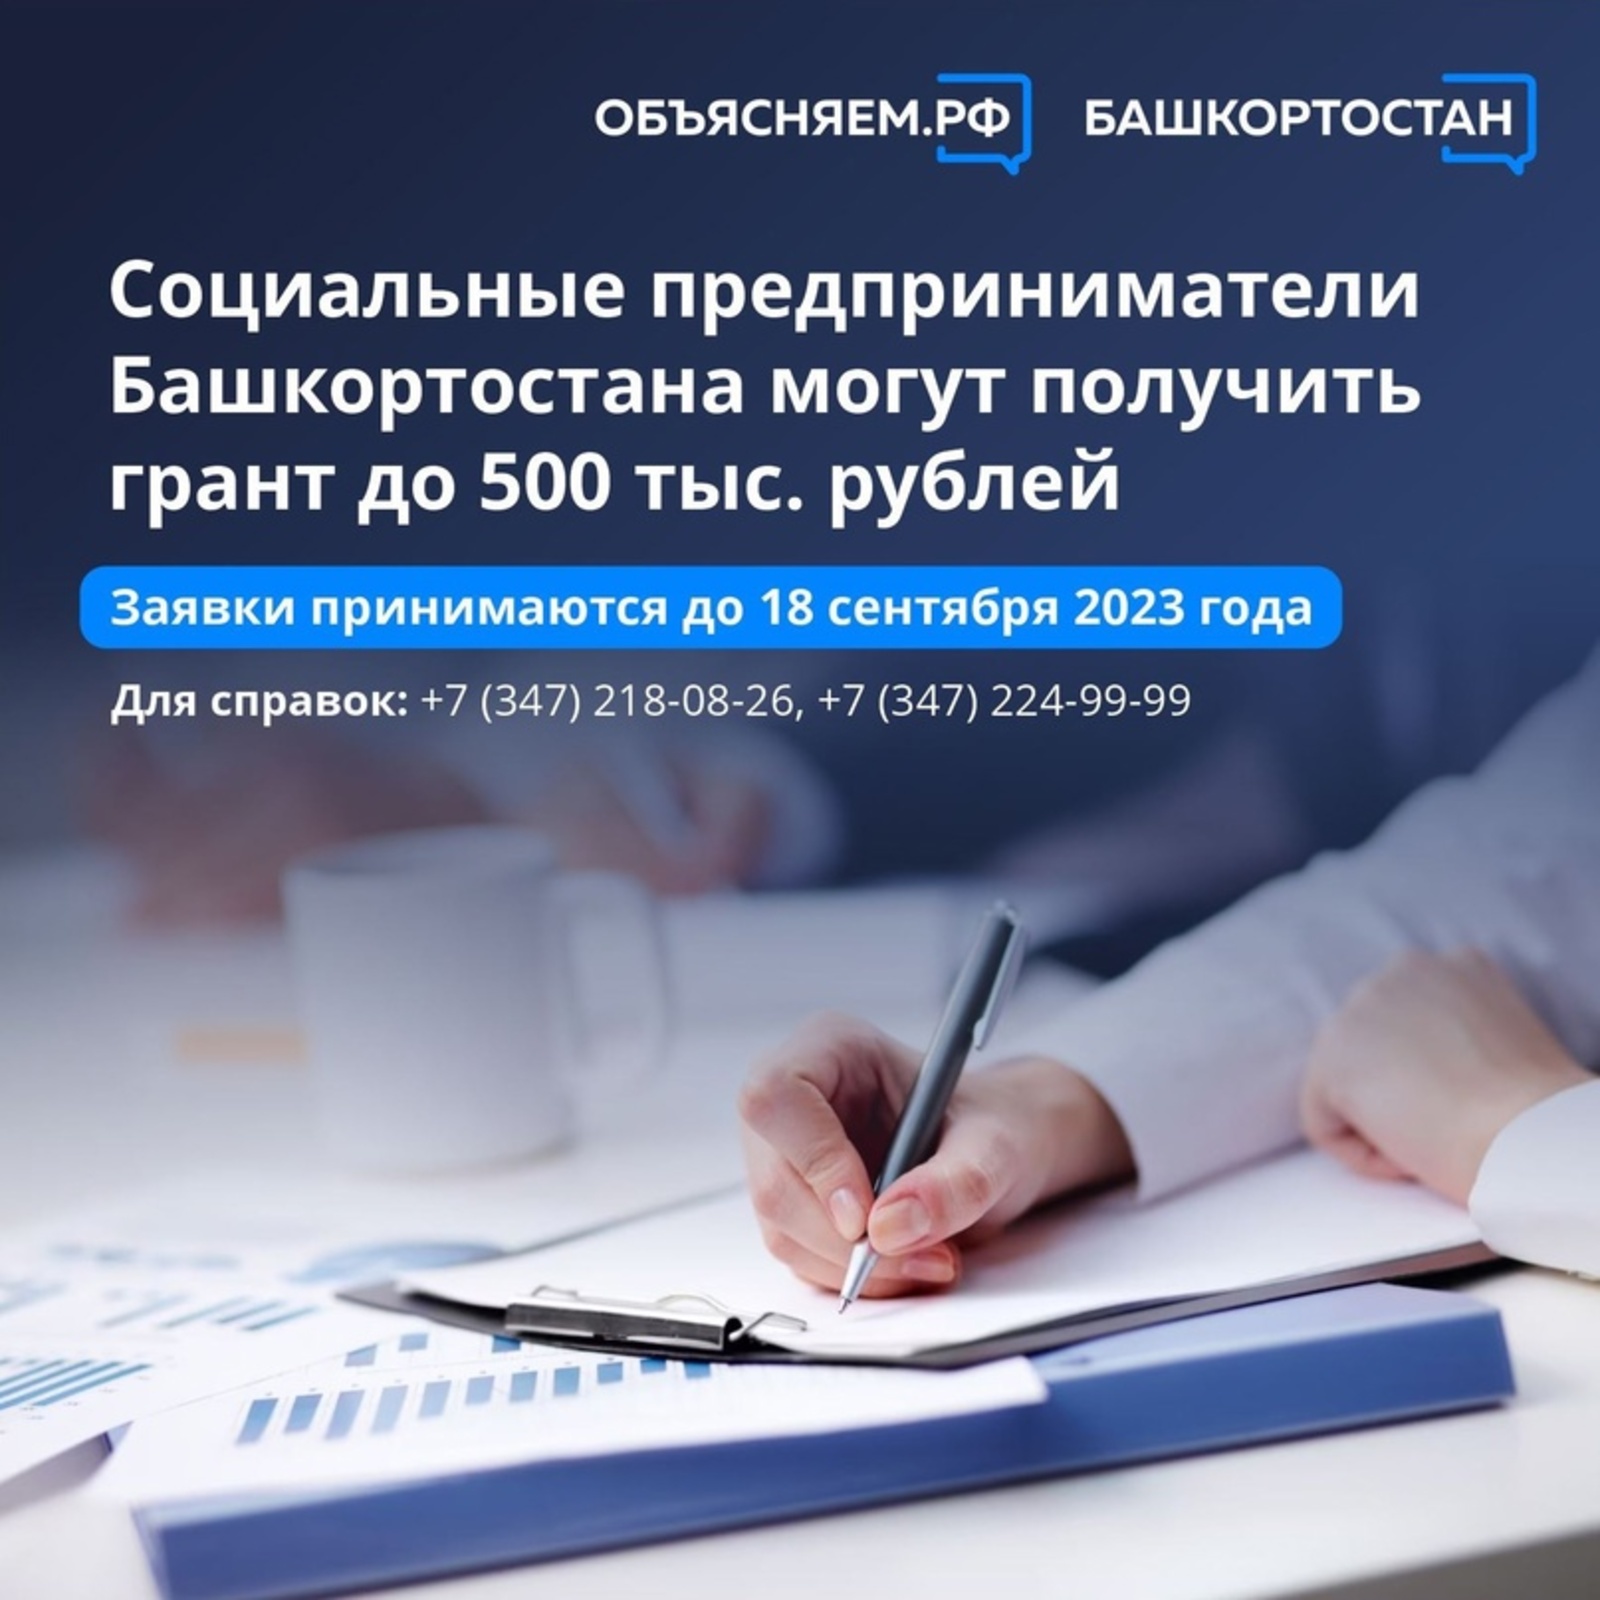 Социальные предприниматели Башкортостана могут получить грант до 500 тыс. рублей в рамках национального проекта «Малое и среднее предпринимательство»